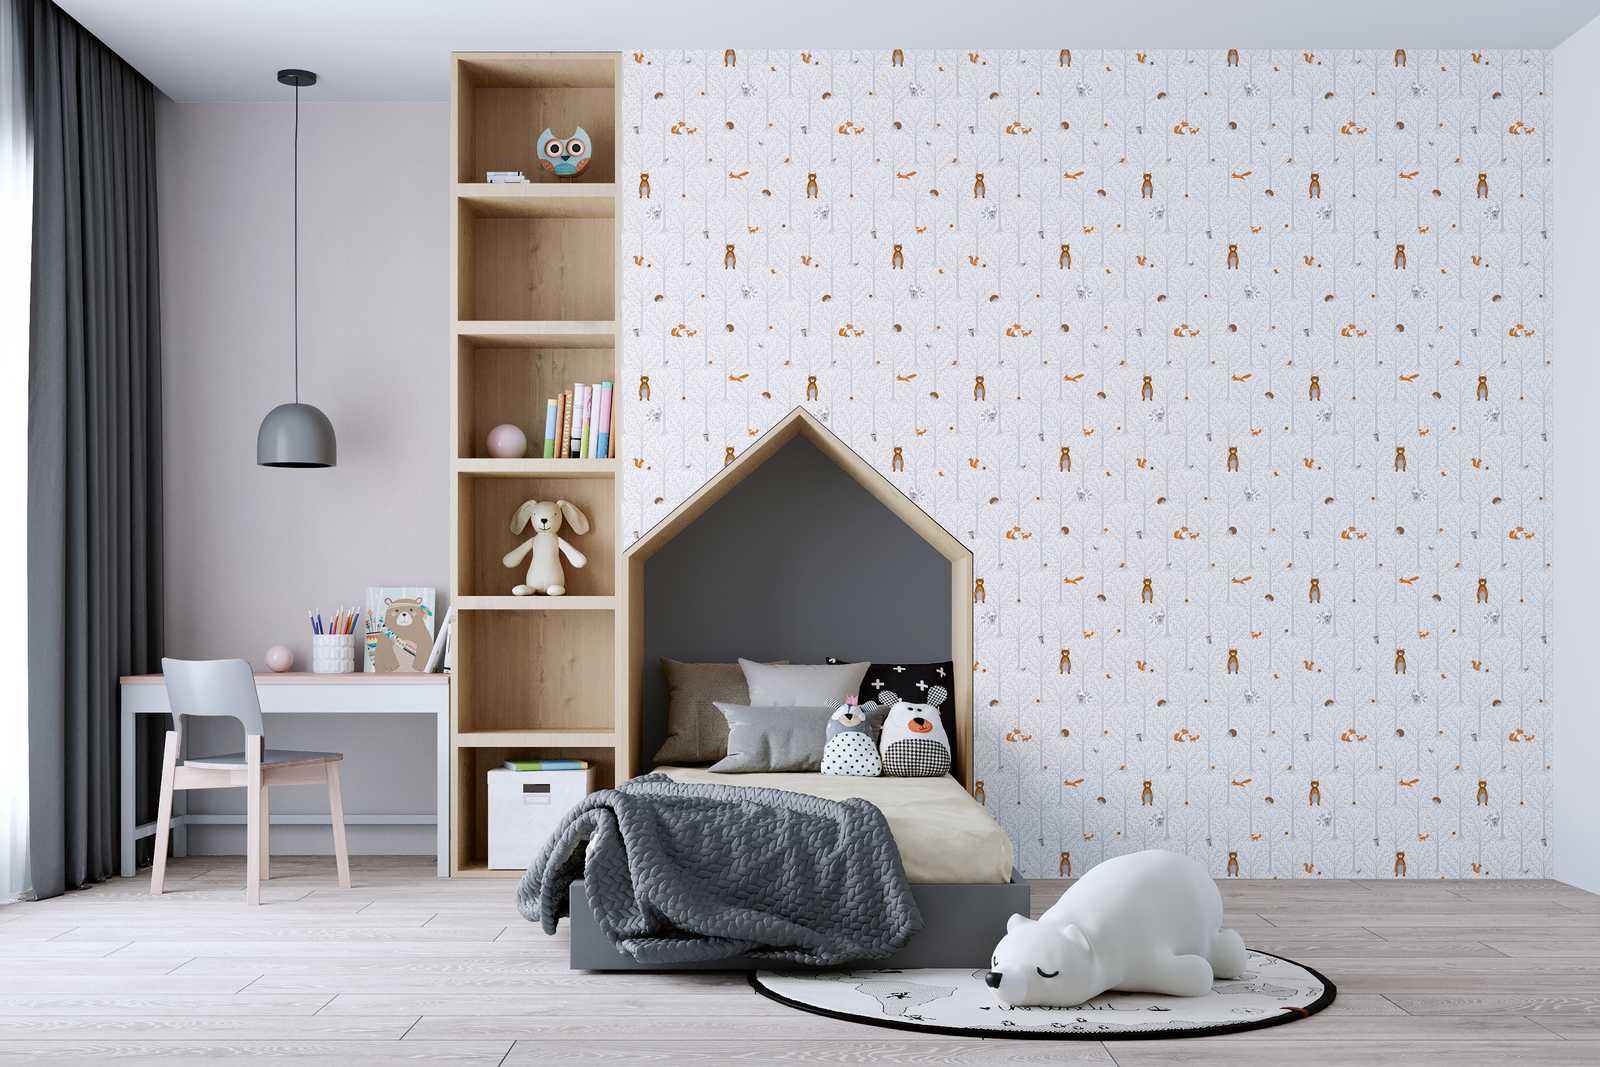             Nursery wallpaper girls forest animals - grey, white, brown
        